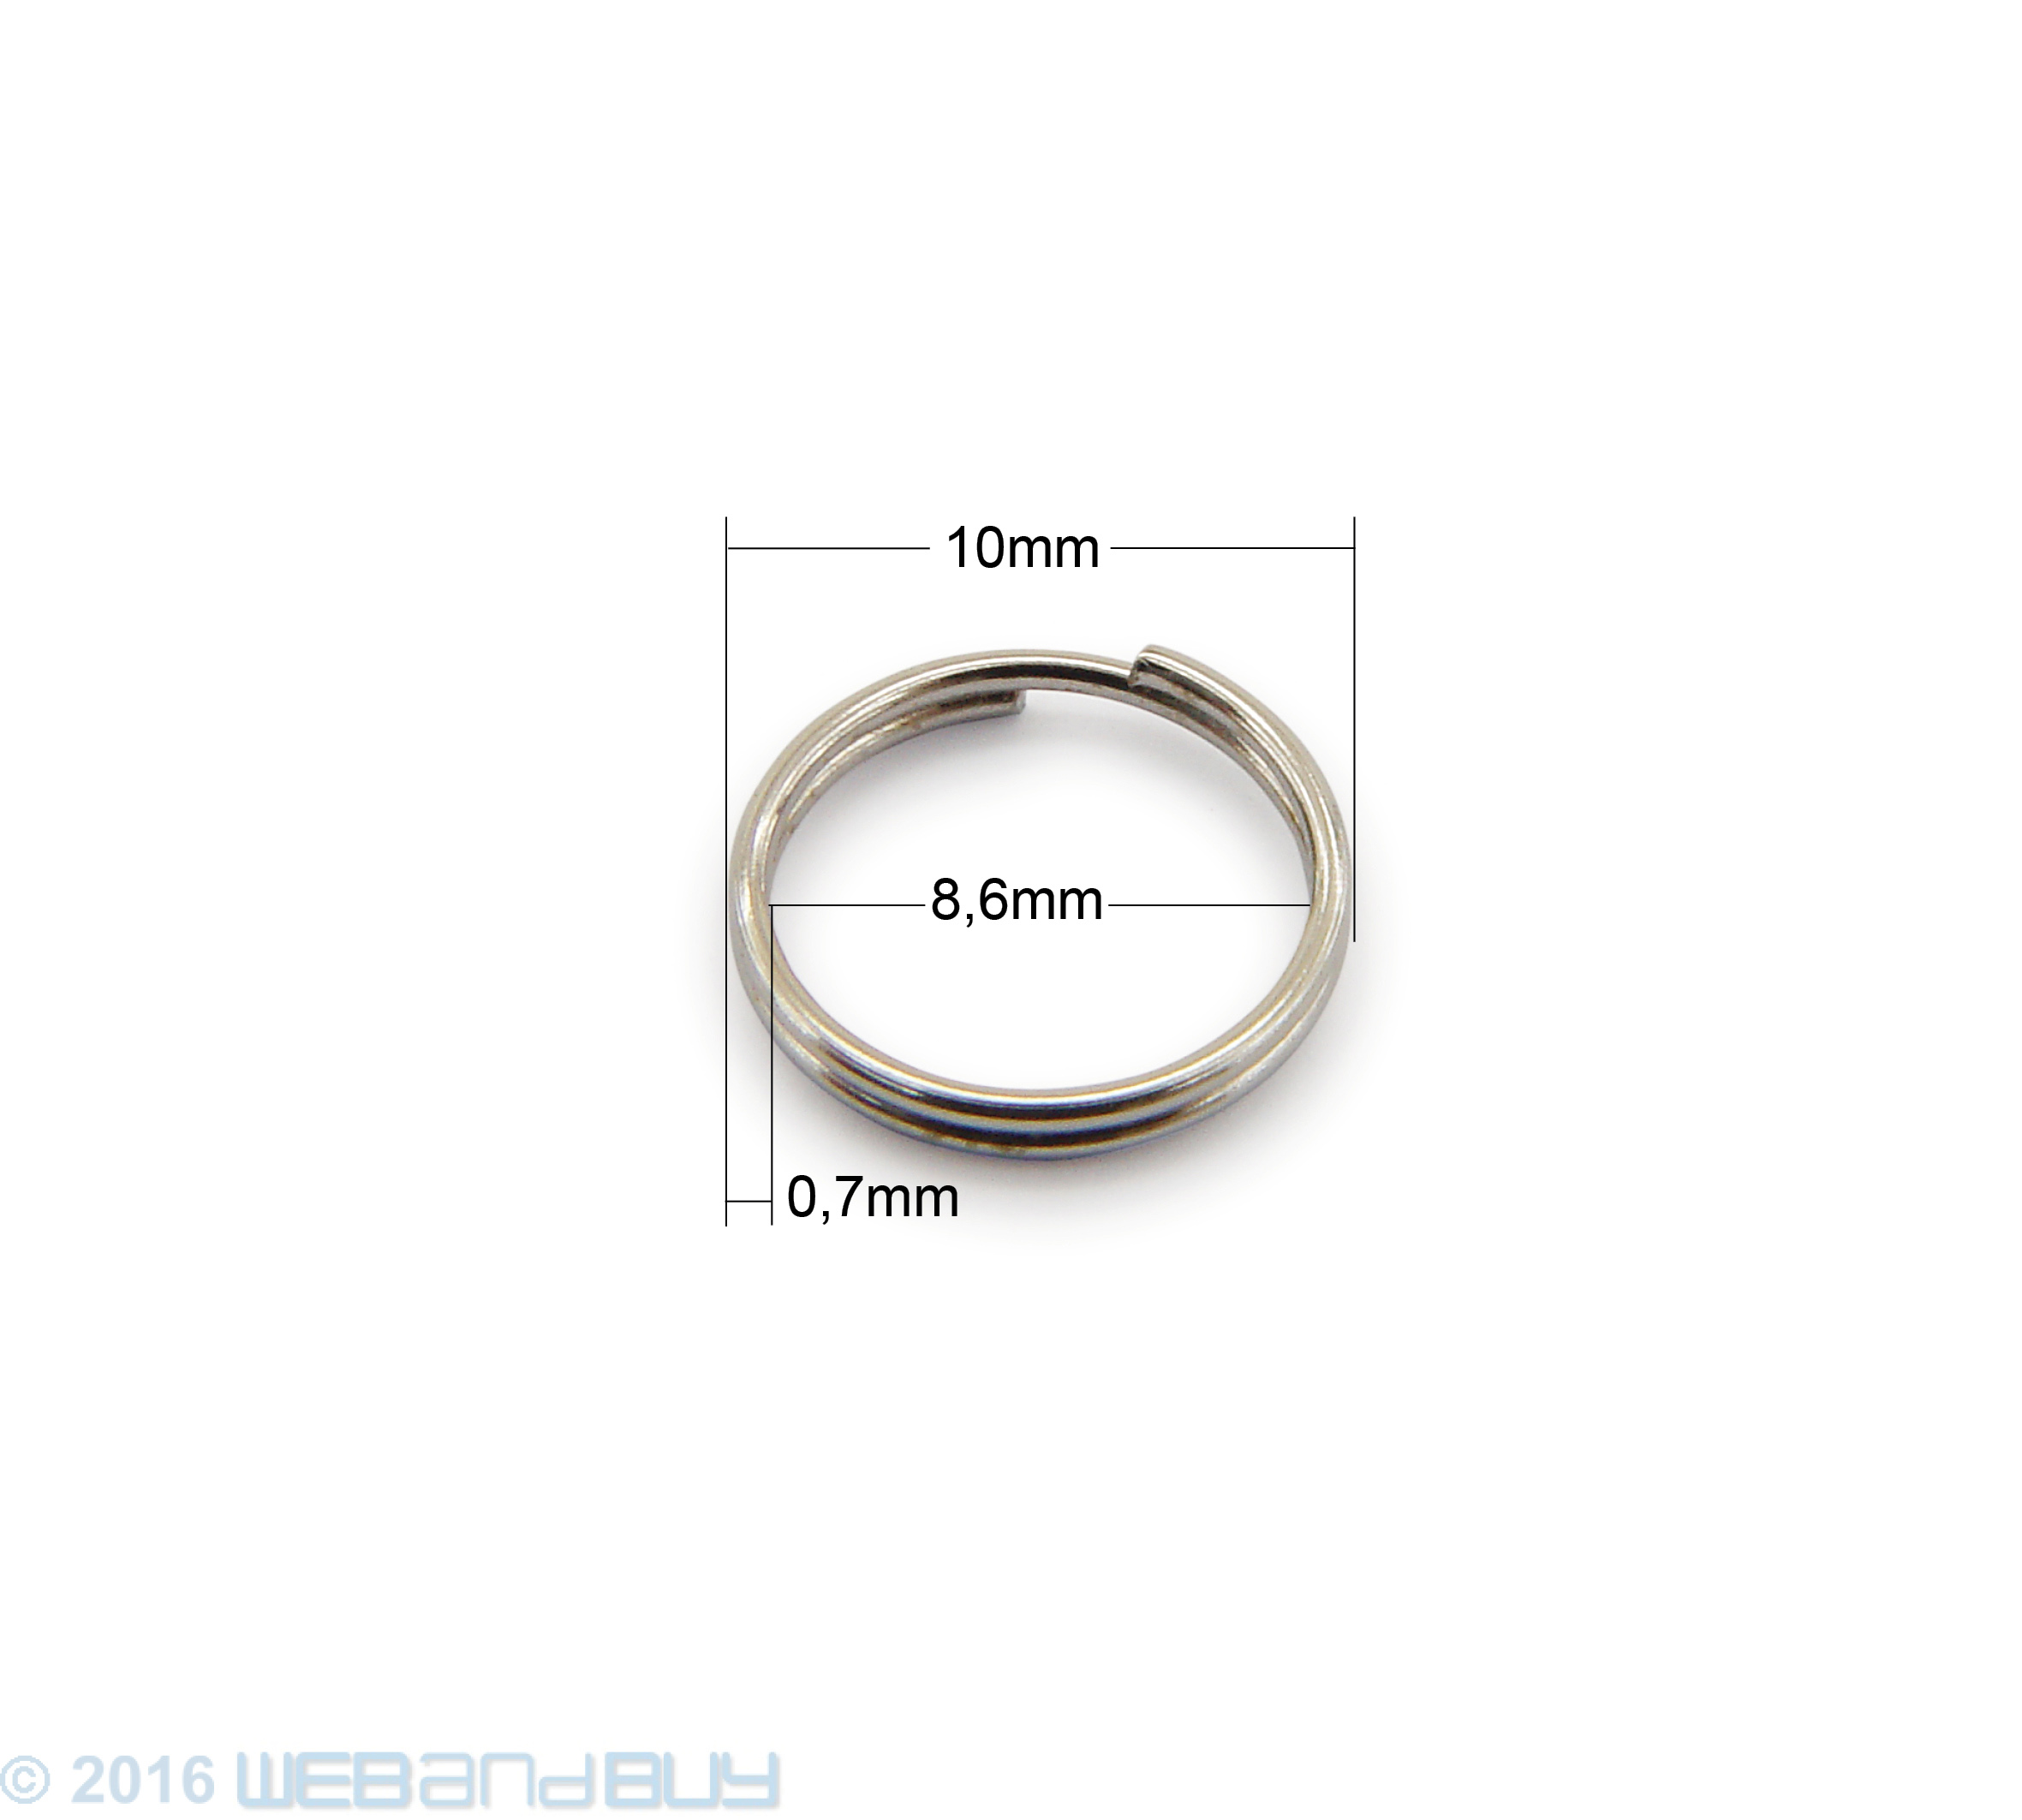 split Rings 10mm Durchmesser Farbe Schwarz 50g ca.260 Stk Schlüsselringe 